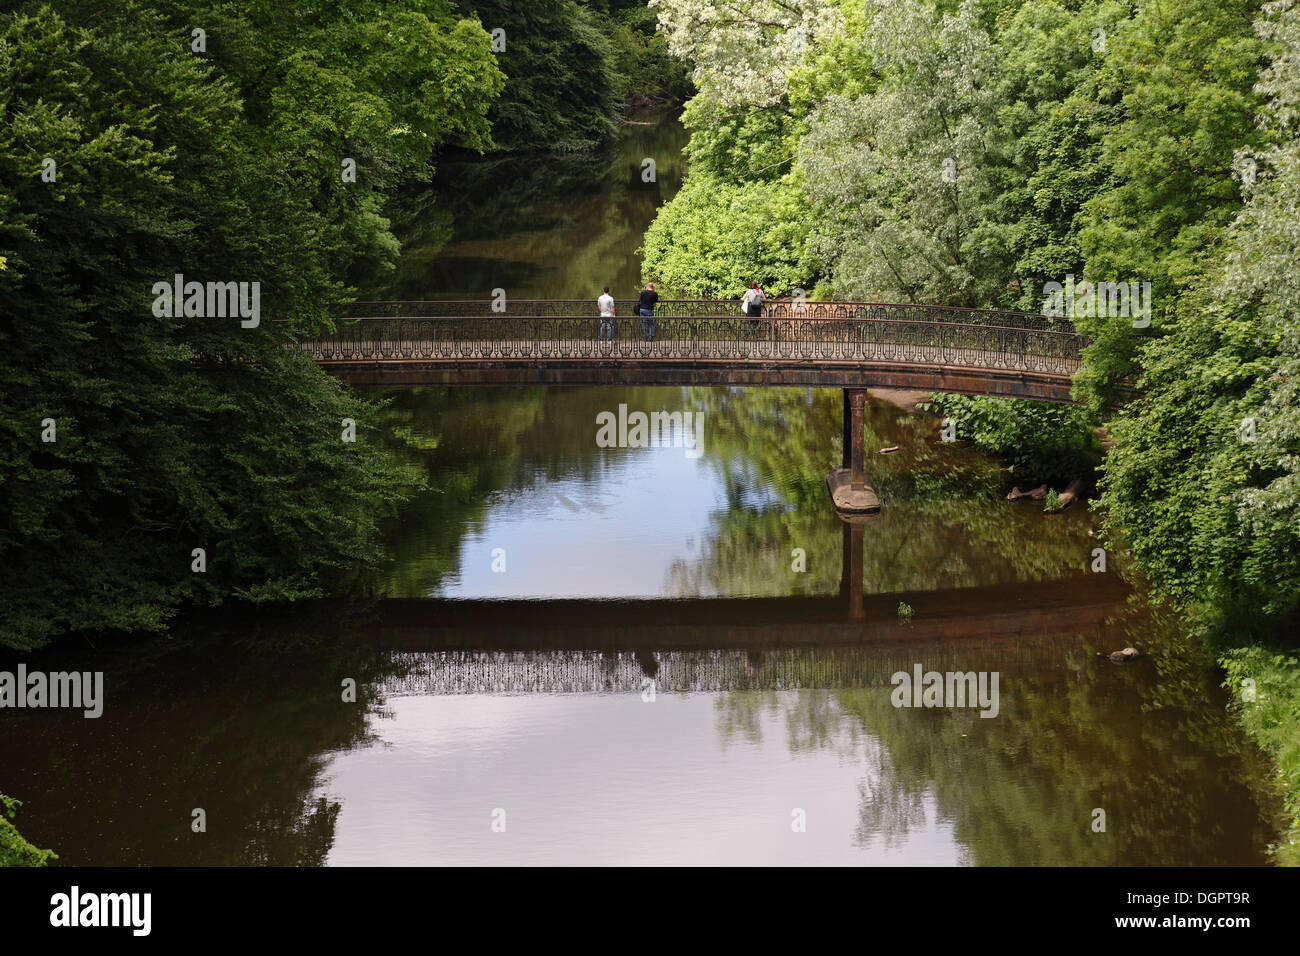 Glasgow Botanic Gardens, ponte pedonale sul fiume Kelvin nel parco pubblico nel West End di Glasgow, Scozia, Regno Unito Foto Stock